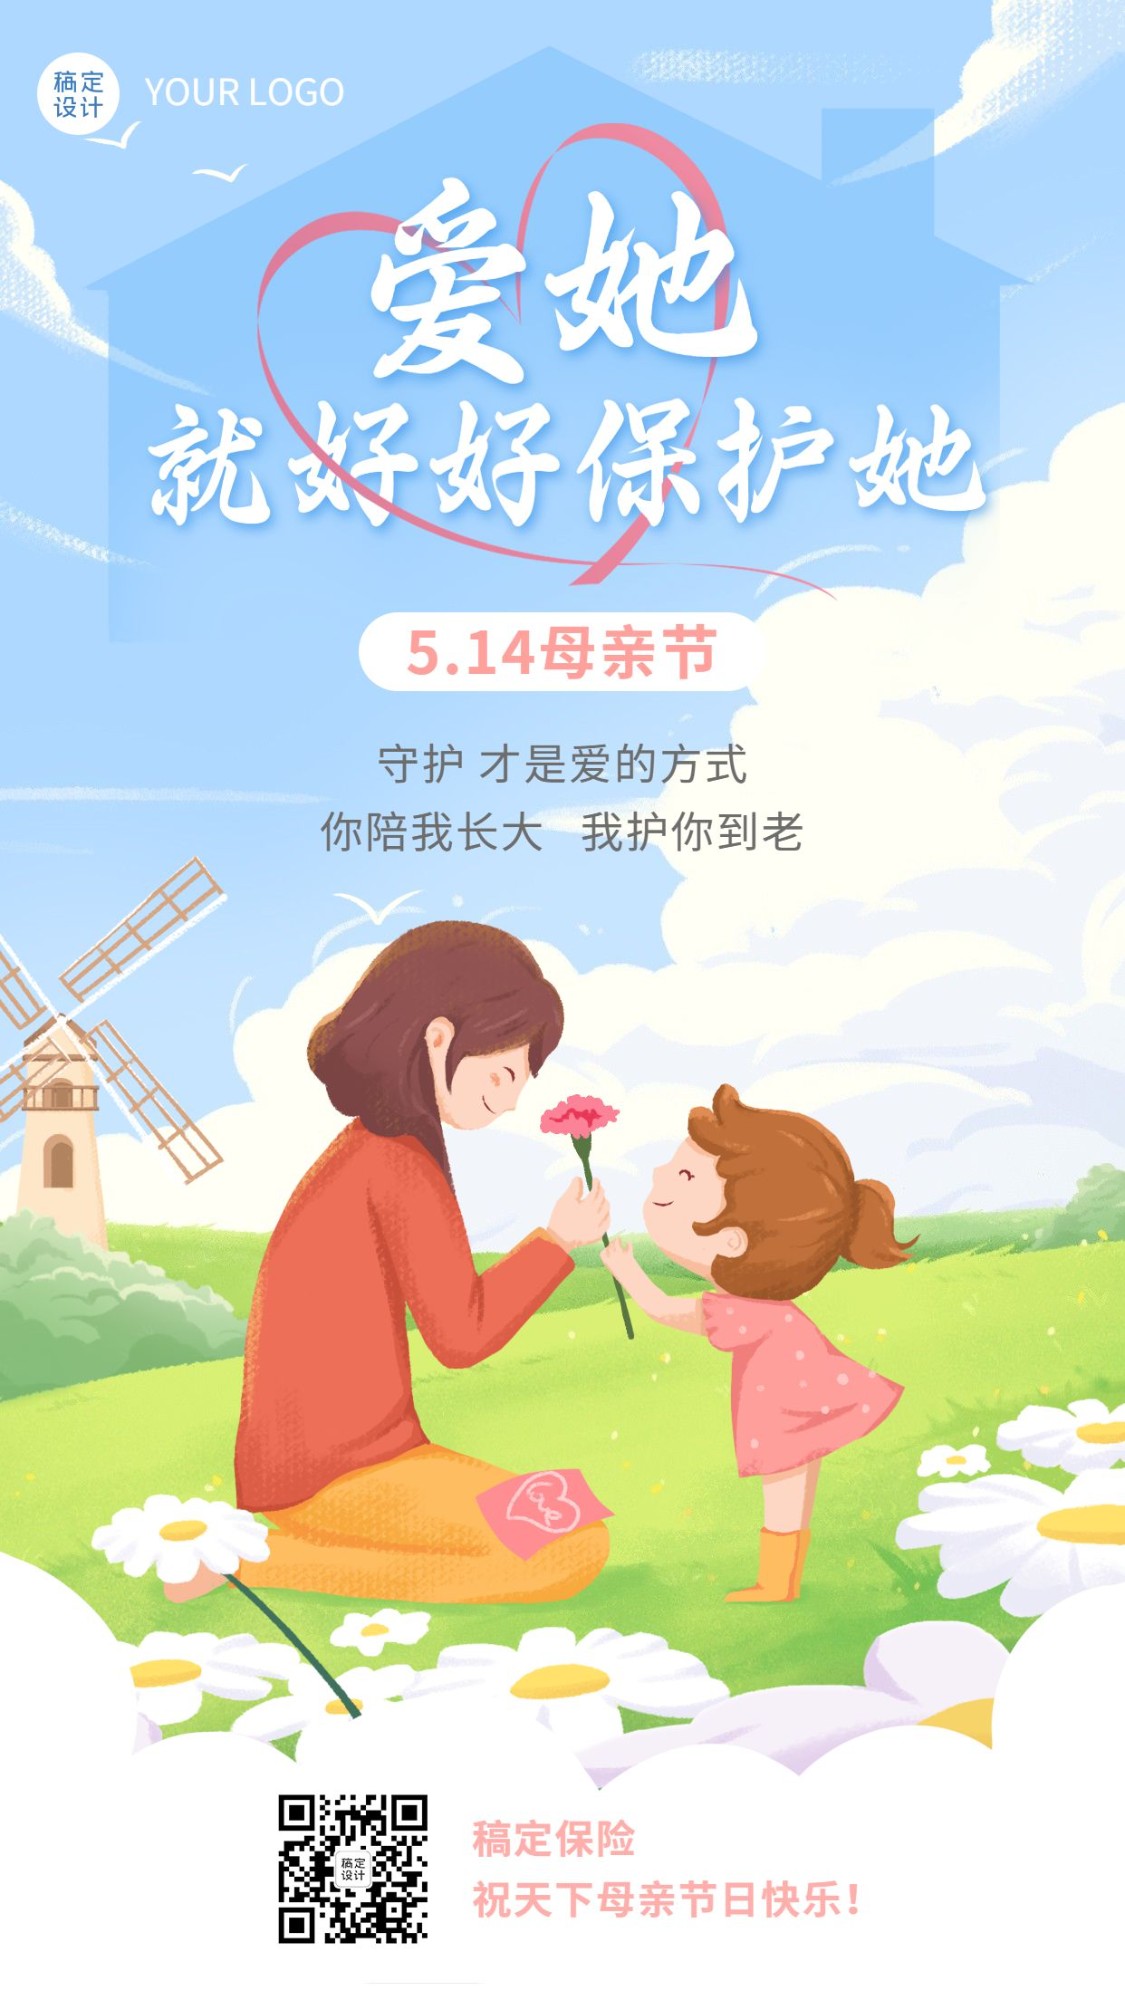 母亲节金融保险节日祝福创意插画海报预览效果